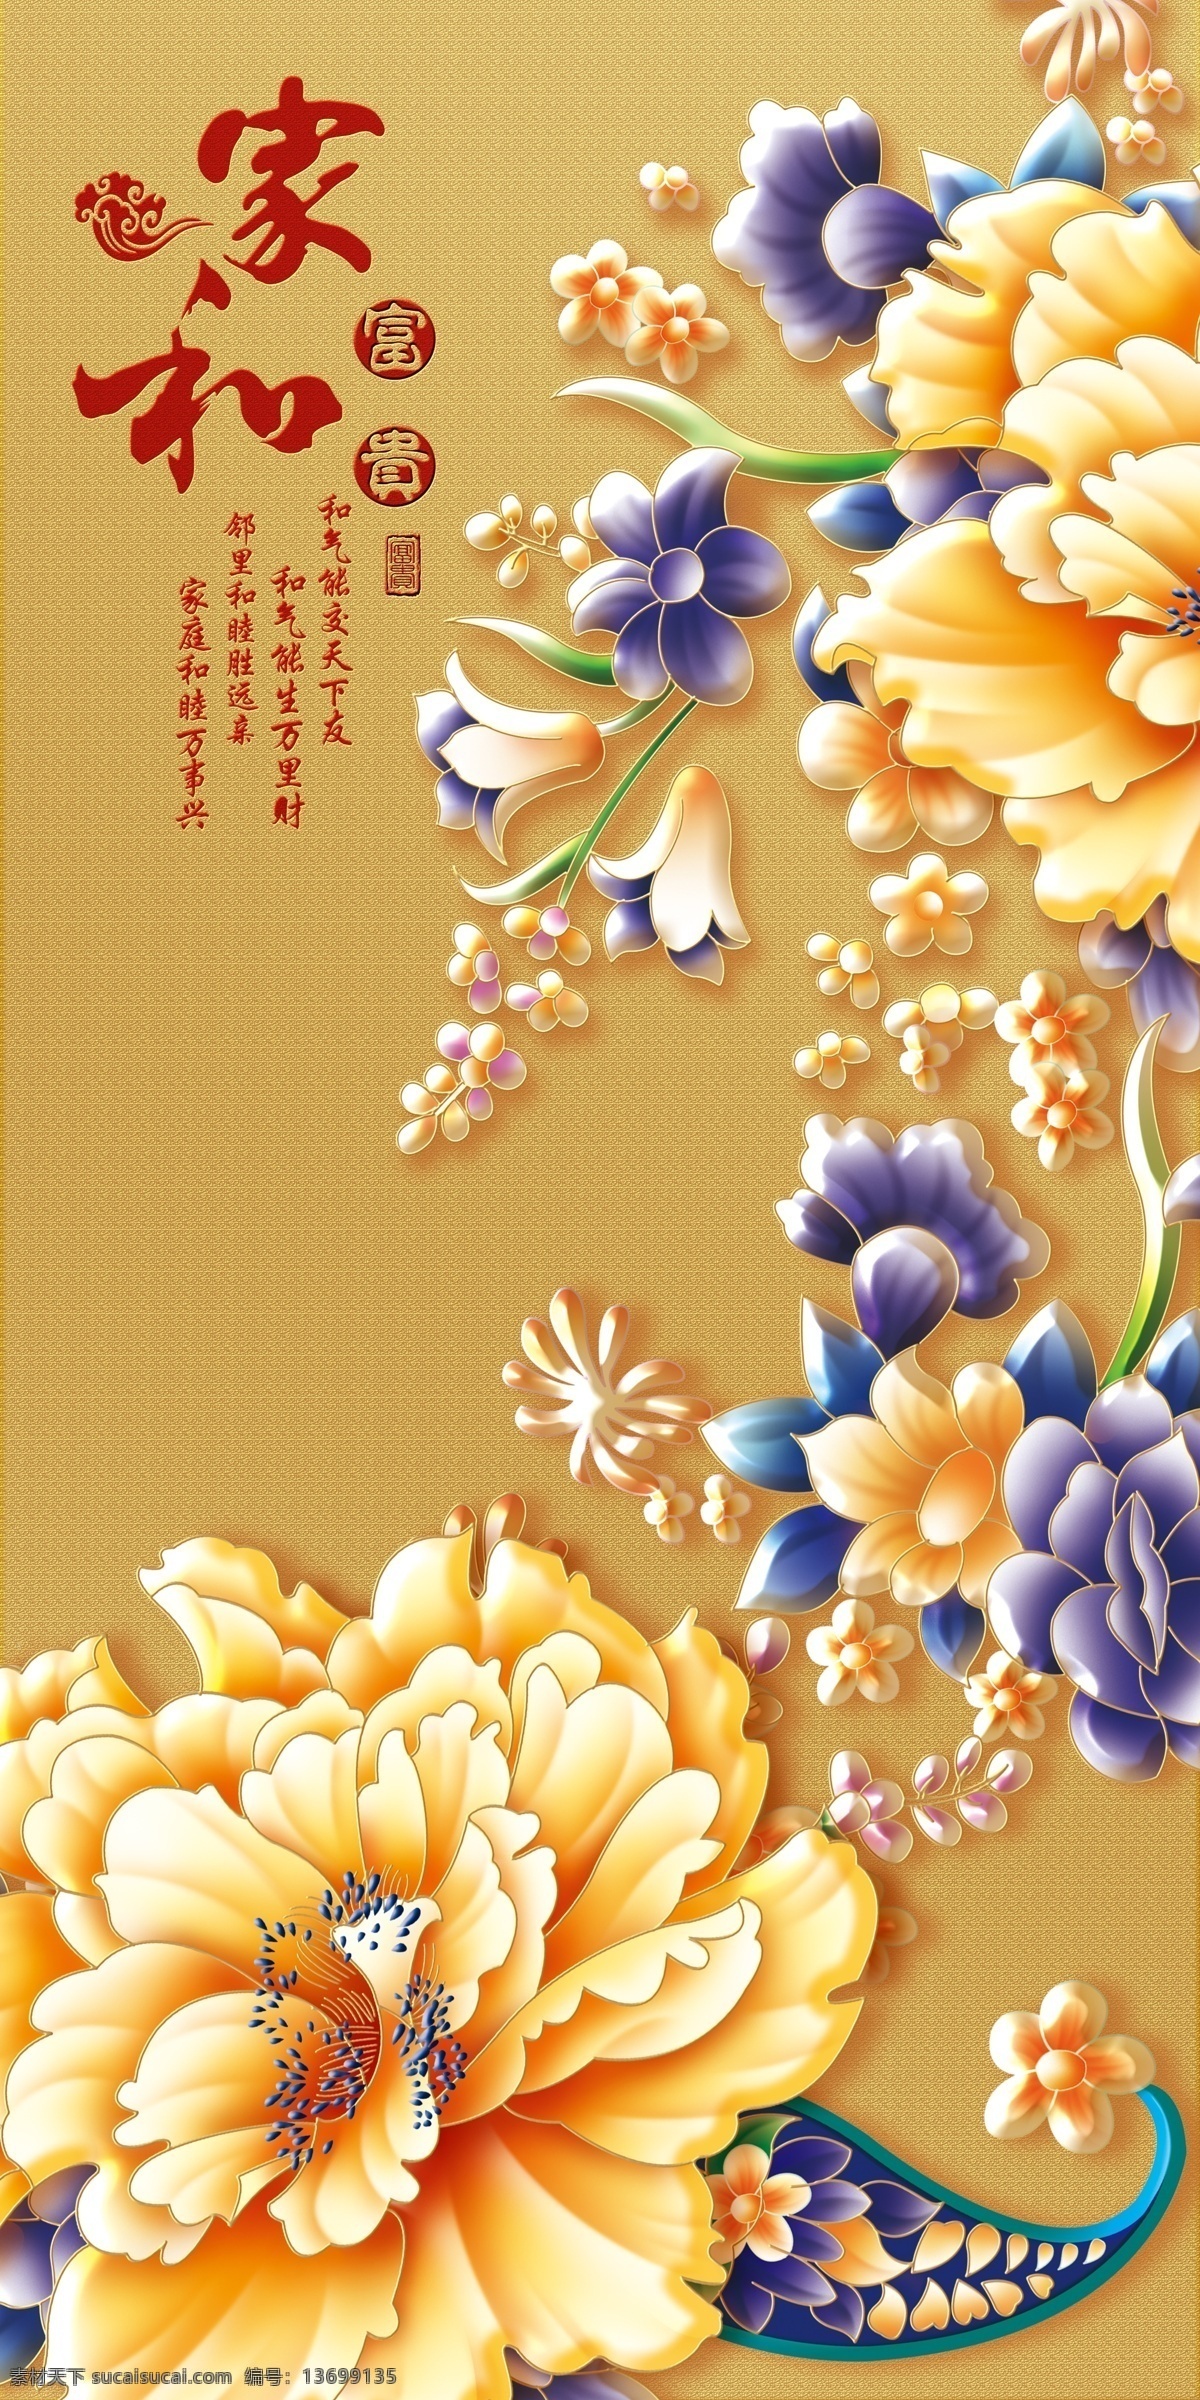 金色 牡丹 瓷砖 高清 背景 墙 中国风 中式 传统 经典 古典 背景墙 电视背景墙 牡丹花 效果图